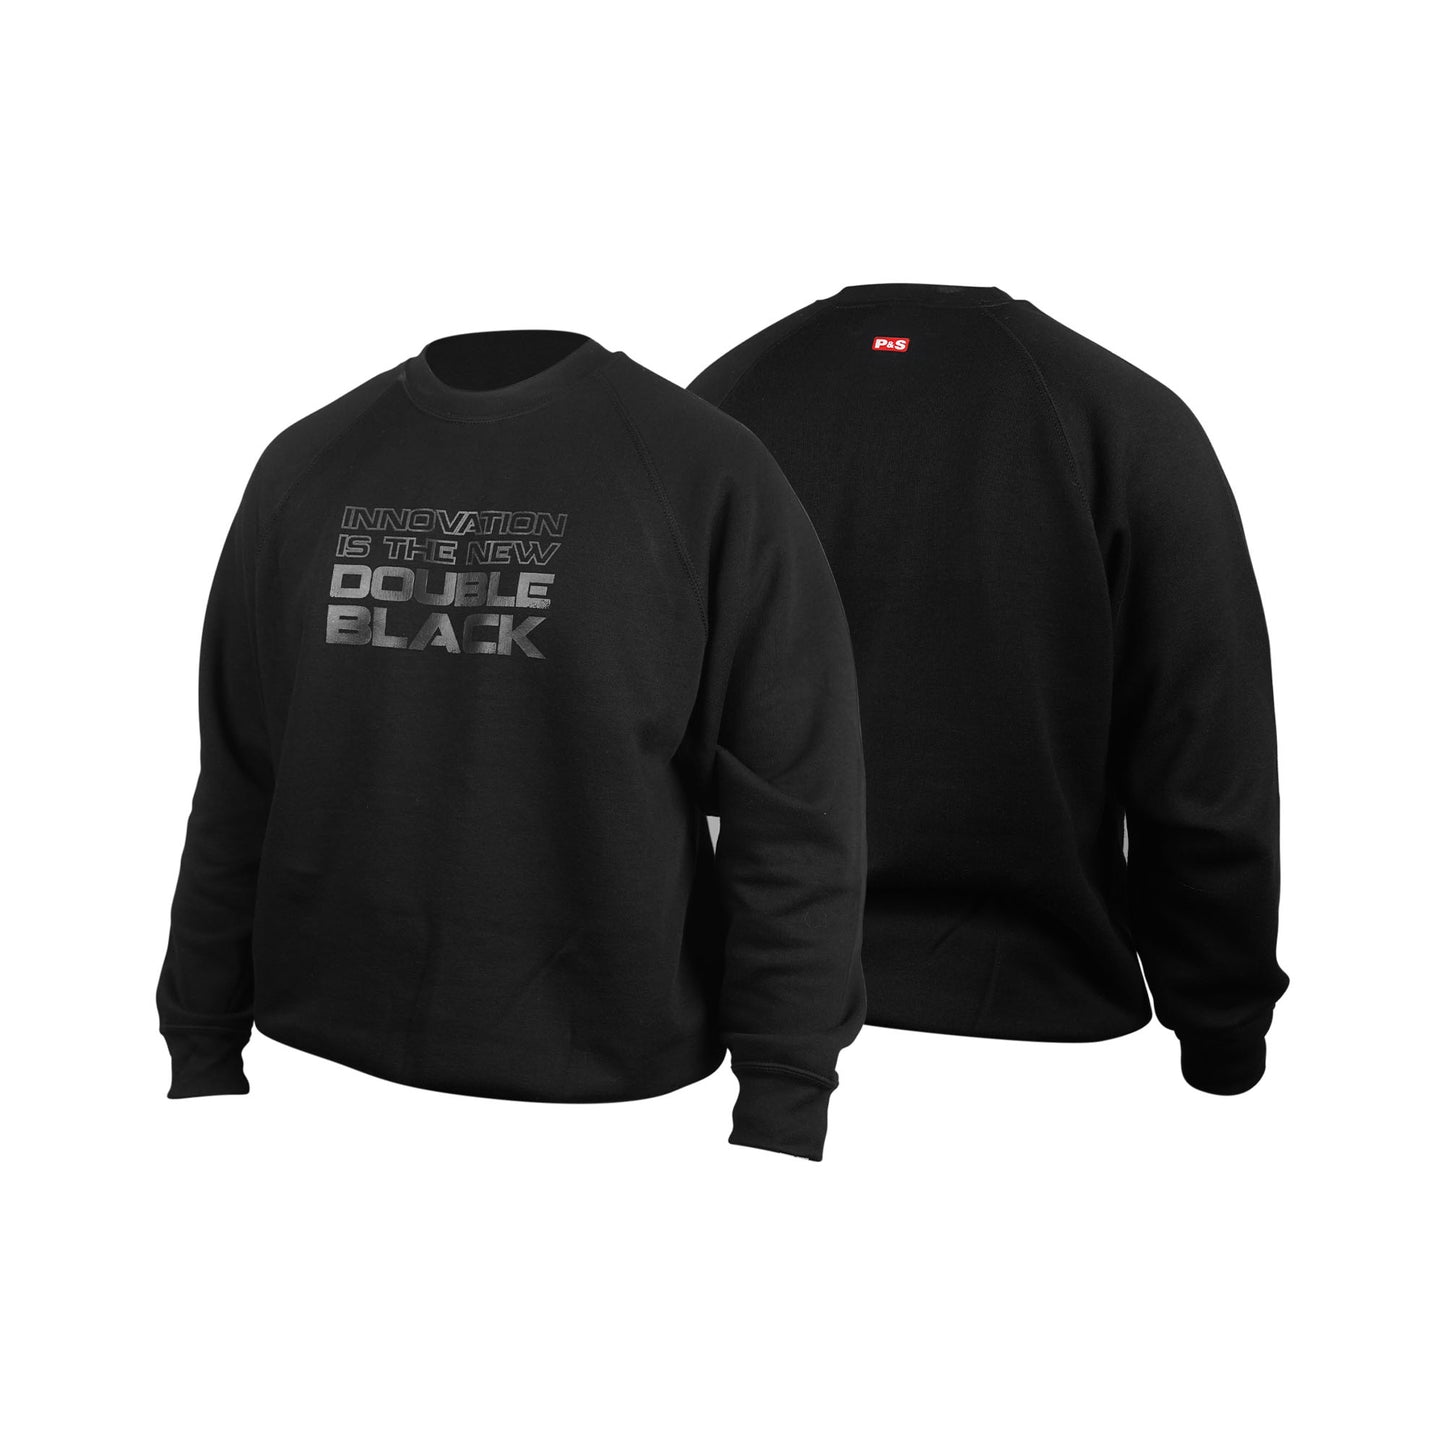 P&S - Double Black Sweater